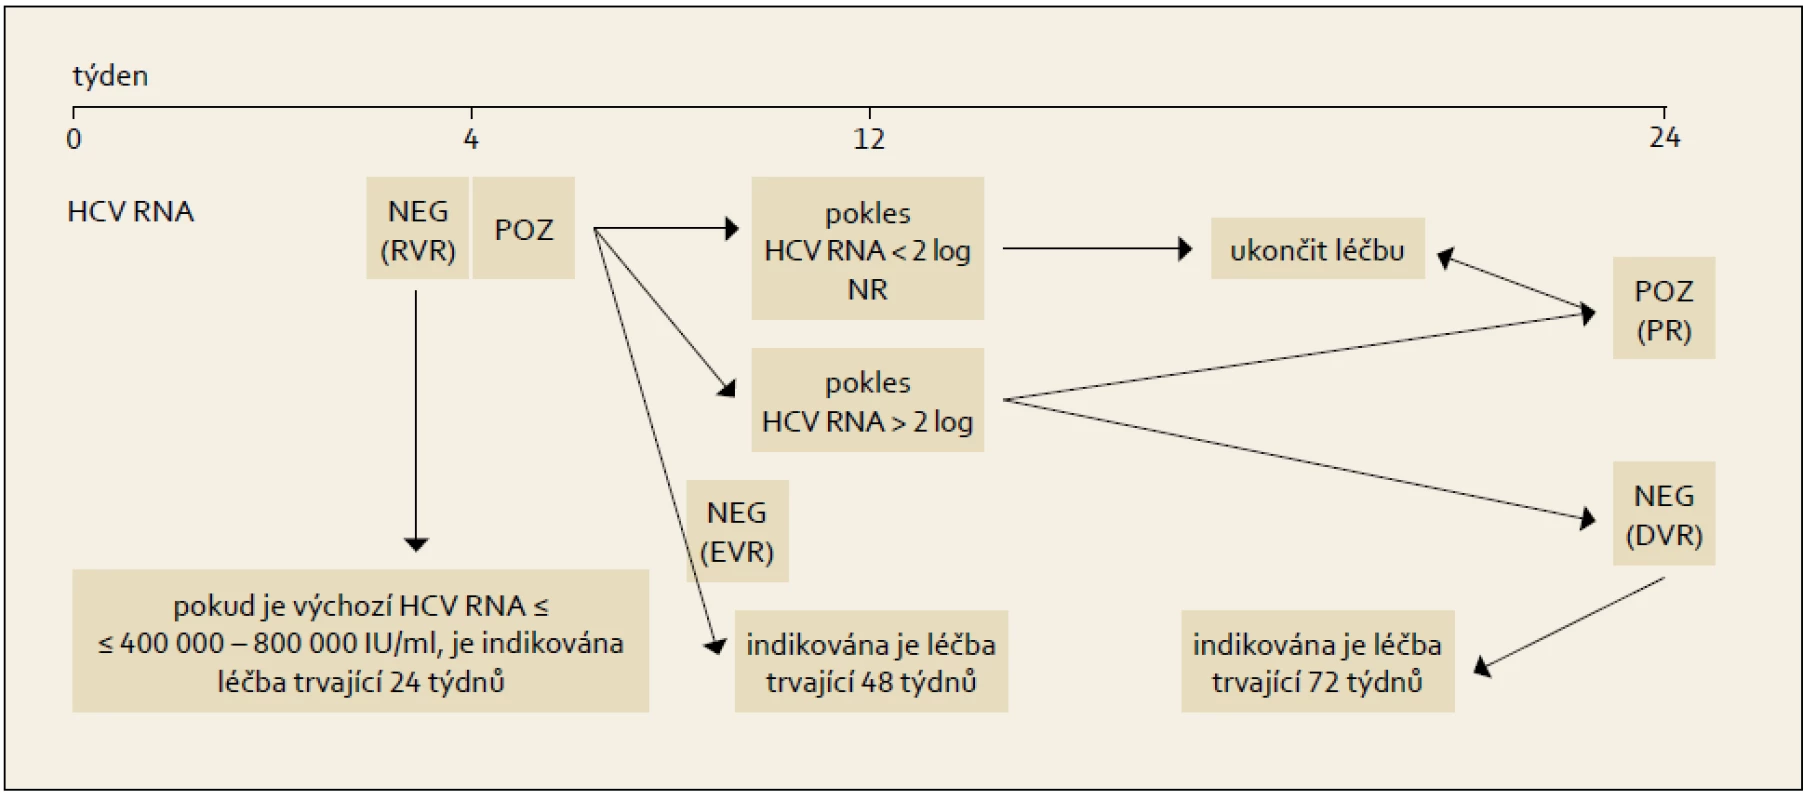 Léčba vedená podle dosažené virologické odpovědi během terapie, genotyp HCV 1.
Fig. 6. Treatment administered based on the achieved virological response during the therapy, HCV 1 genotype.